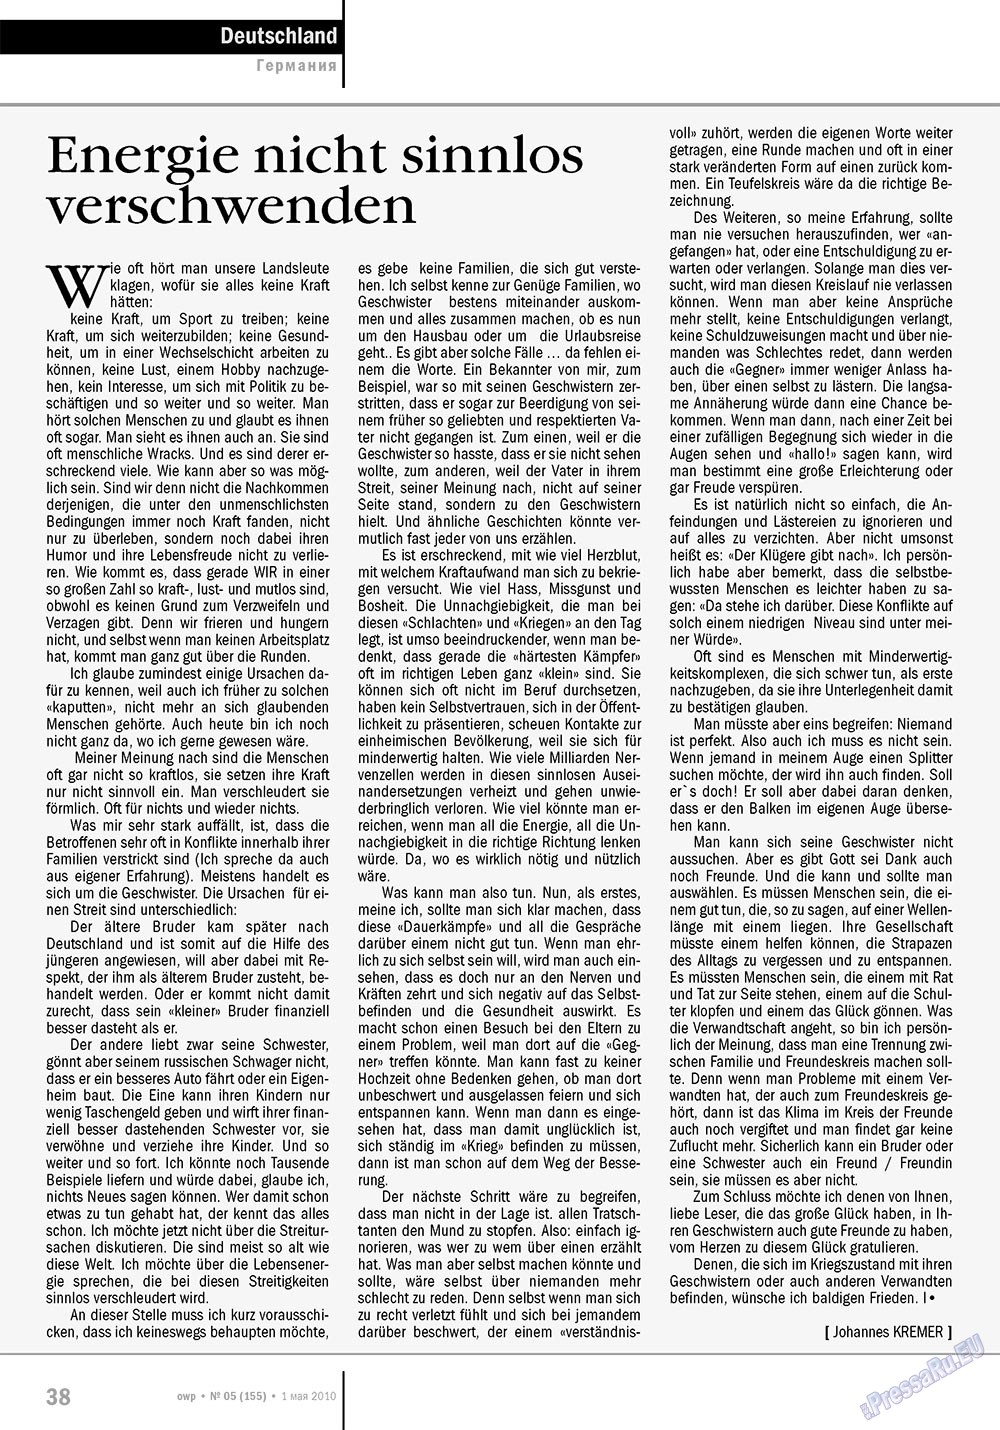 Ost-West Panorama (журнал). 2010 год, номер 5, стр. 38